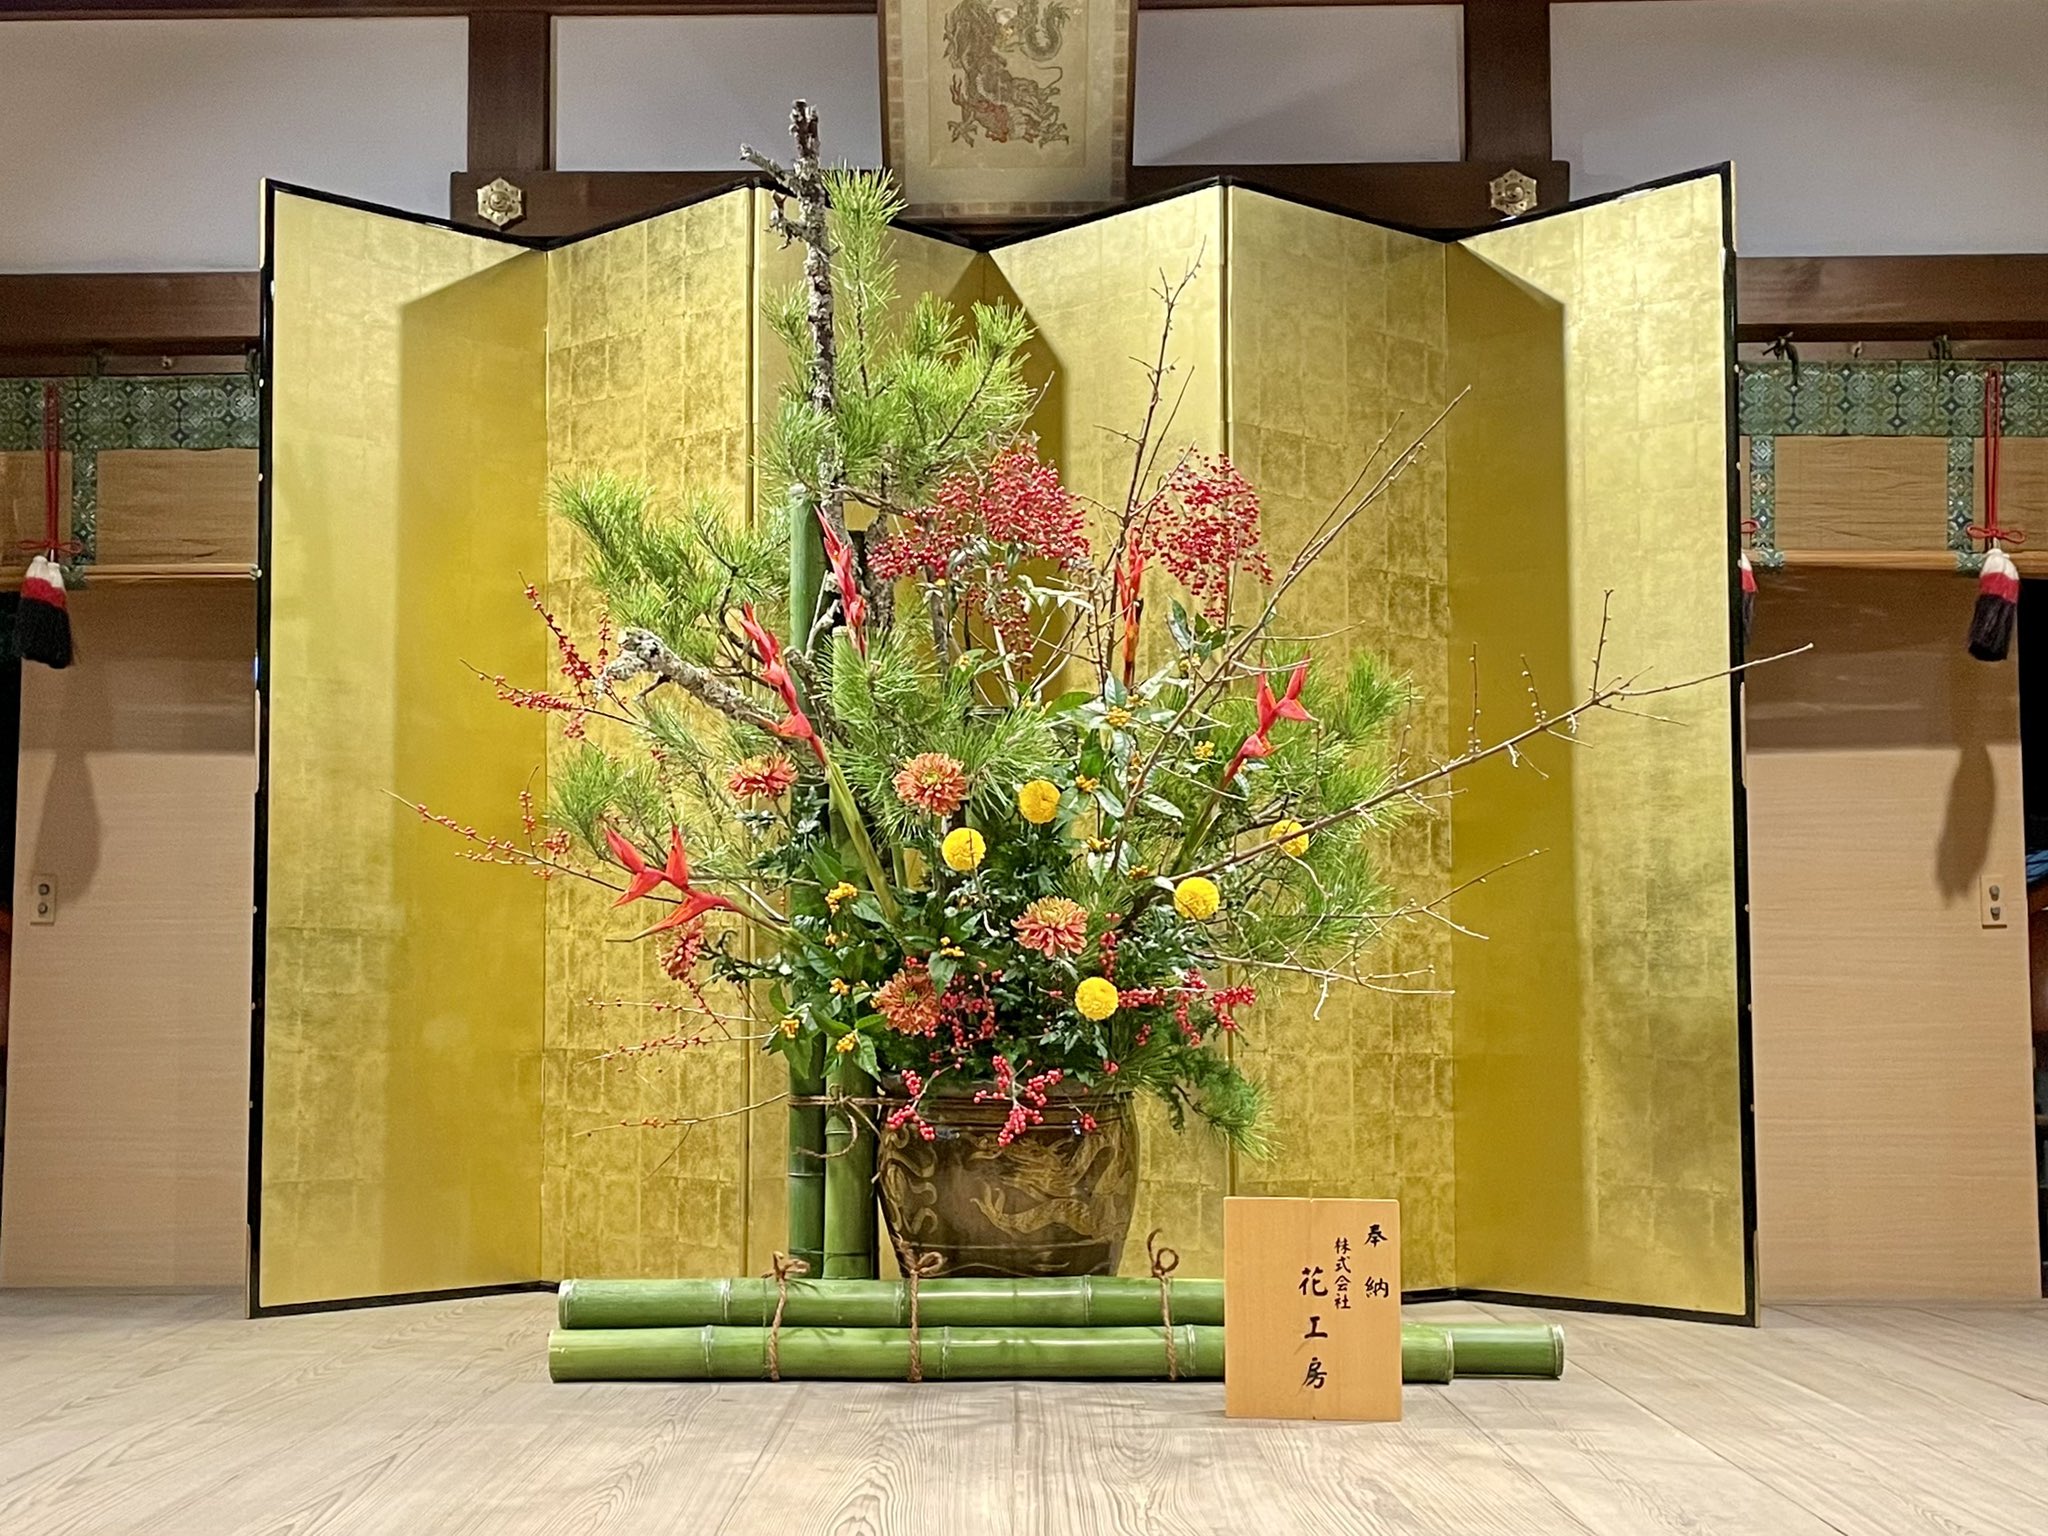 京都 護王神社 株式会社花工房様より 新春の生け花を御奉納いただきました 拝殿の大絵馬の後ろ側に展示していただき 夜間はライトに照らし出され大変幻想的で華やかです 生け花は来年1月末頃まで展示しています 京都 護王神社 初詣 T Co